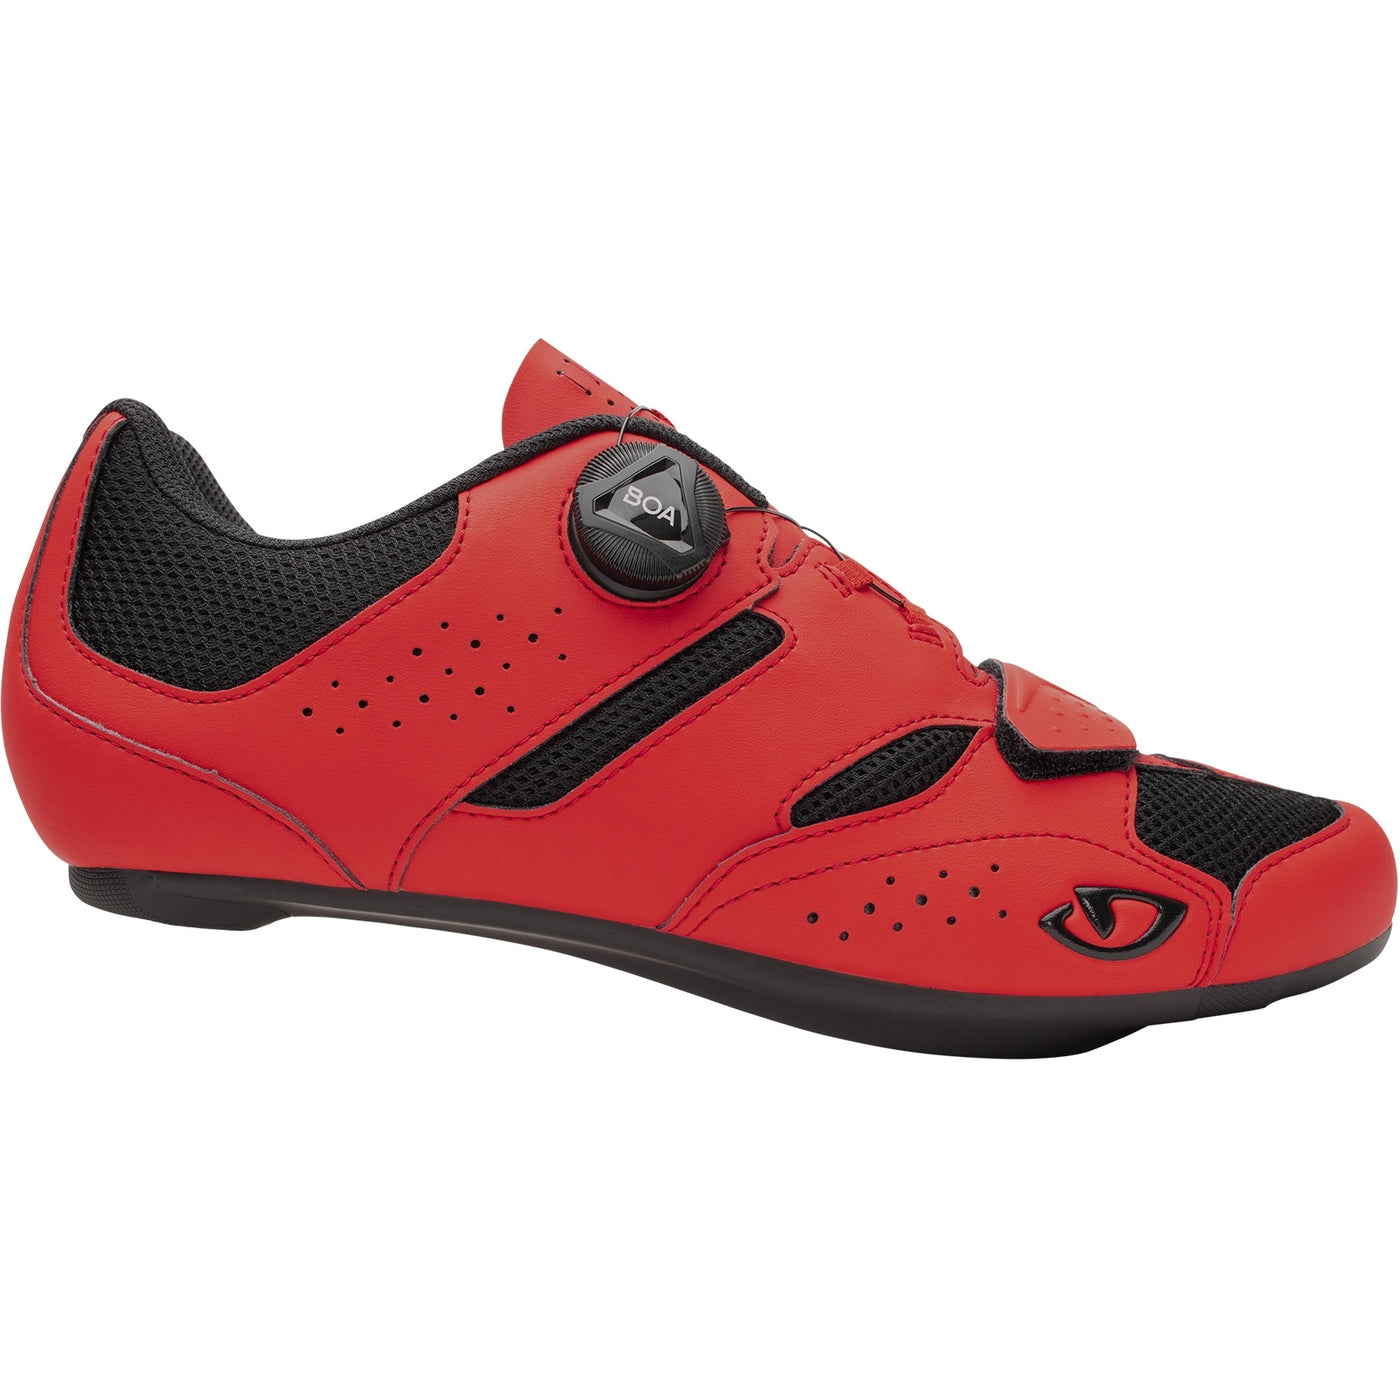 Giro Savix II Road Cycling Shoes (Bright Red)